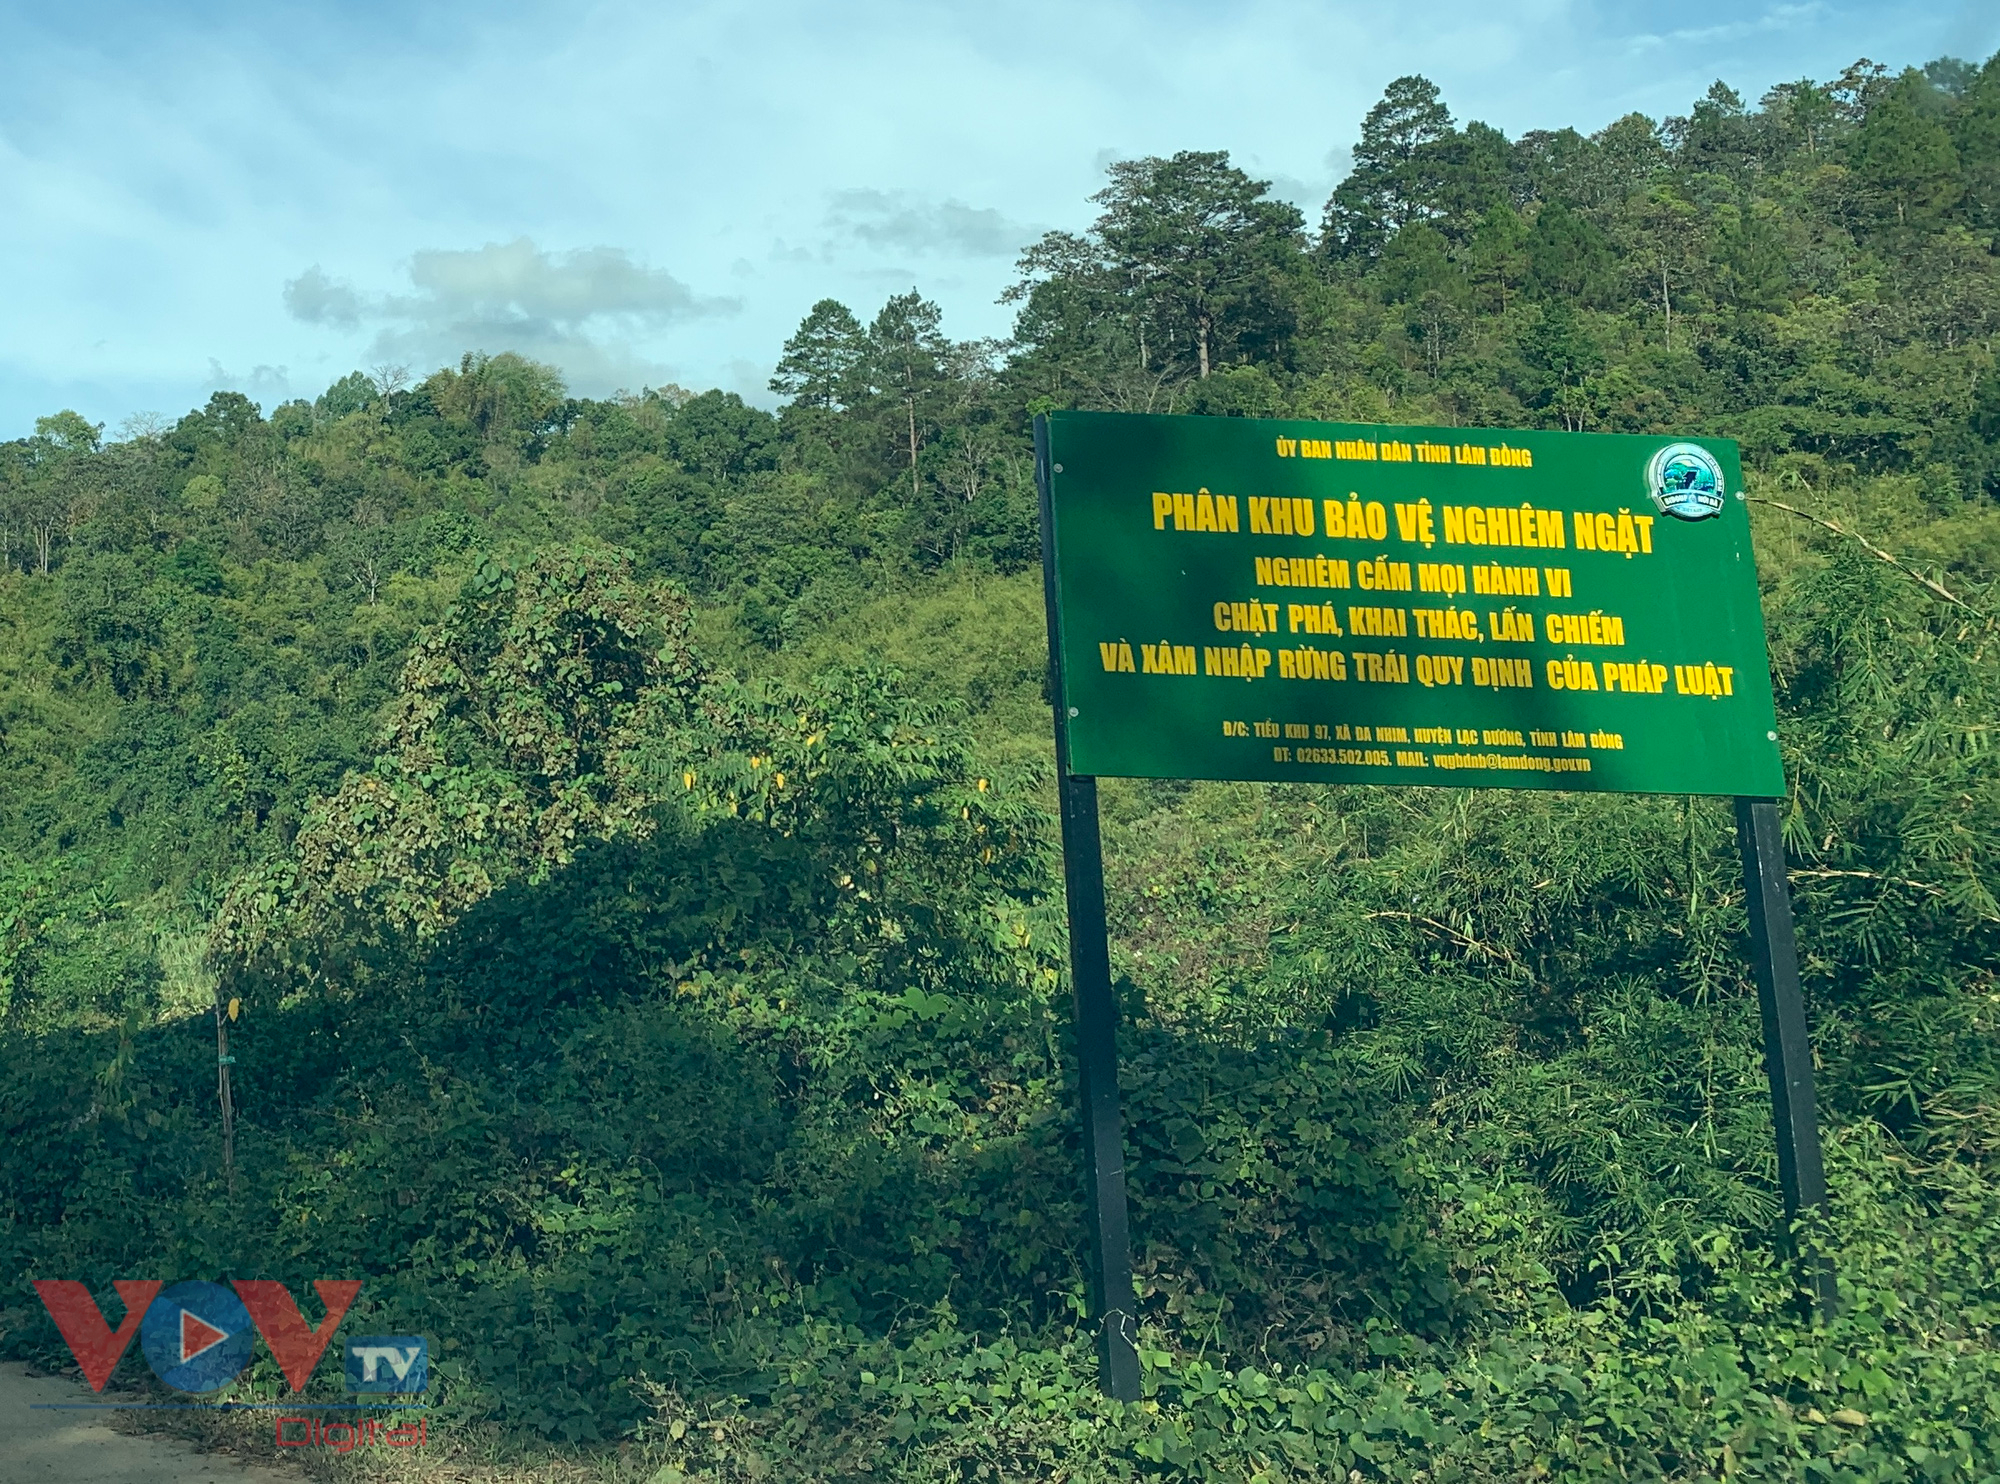 Cận cảnh rừng Quốc gia tại Đắk Lắk, Lâm Đồng bị phá để làm đường khi chưa được phép - Ảnh 10.